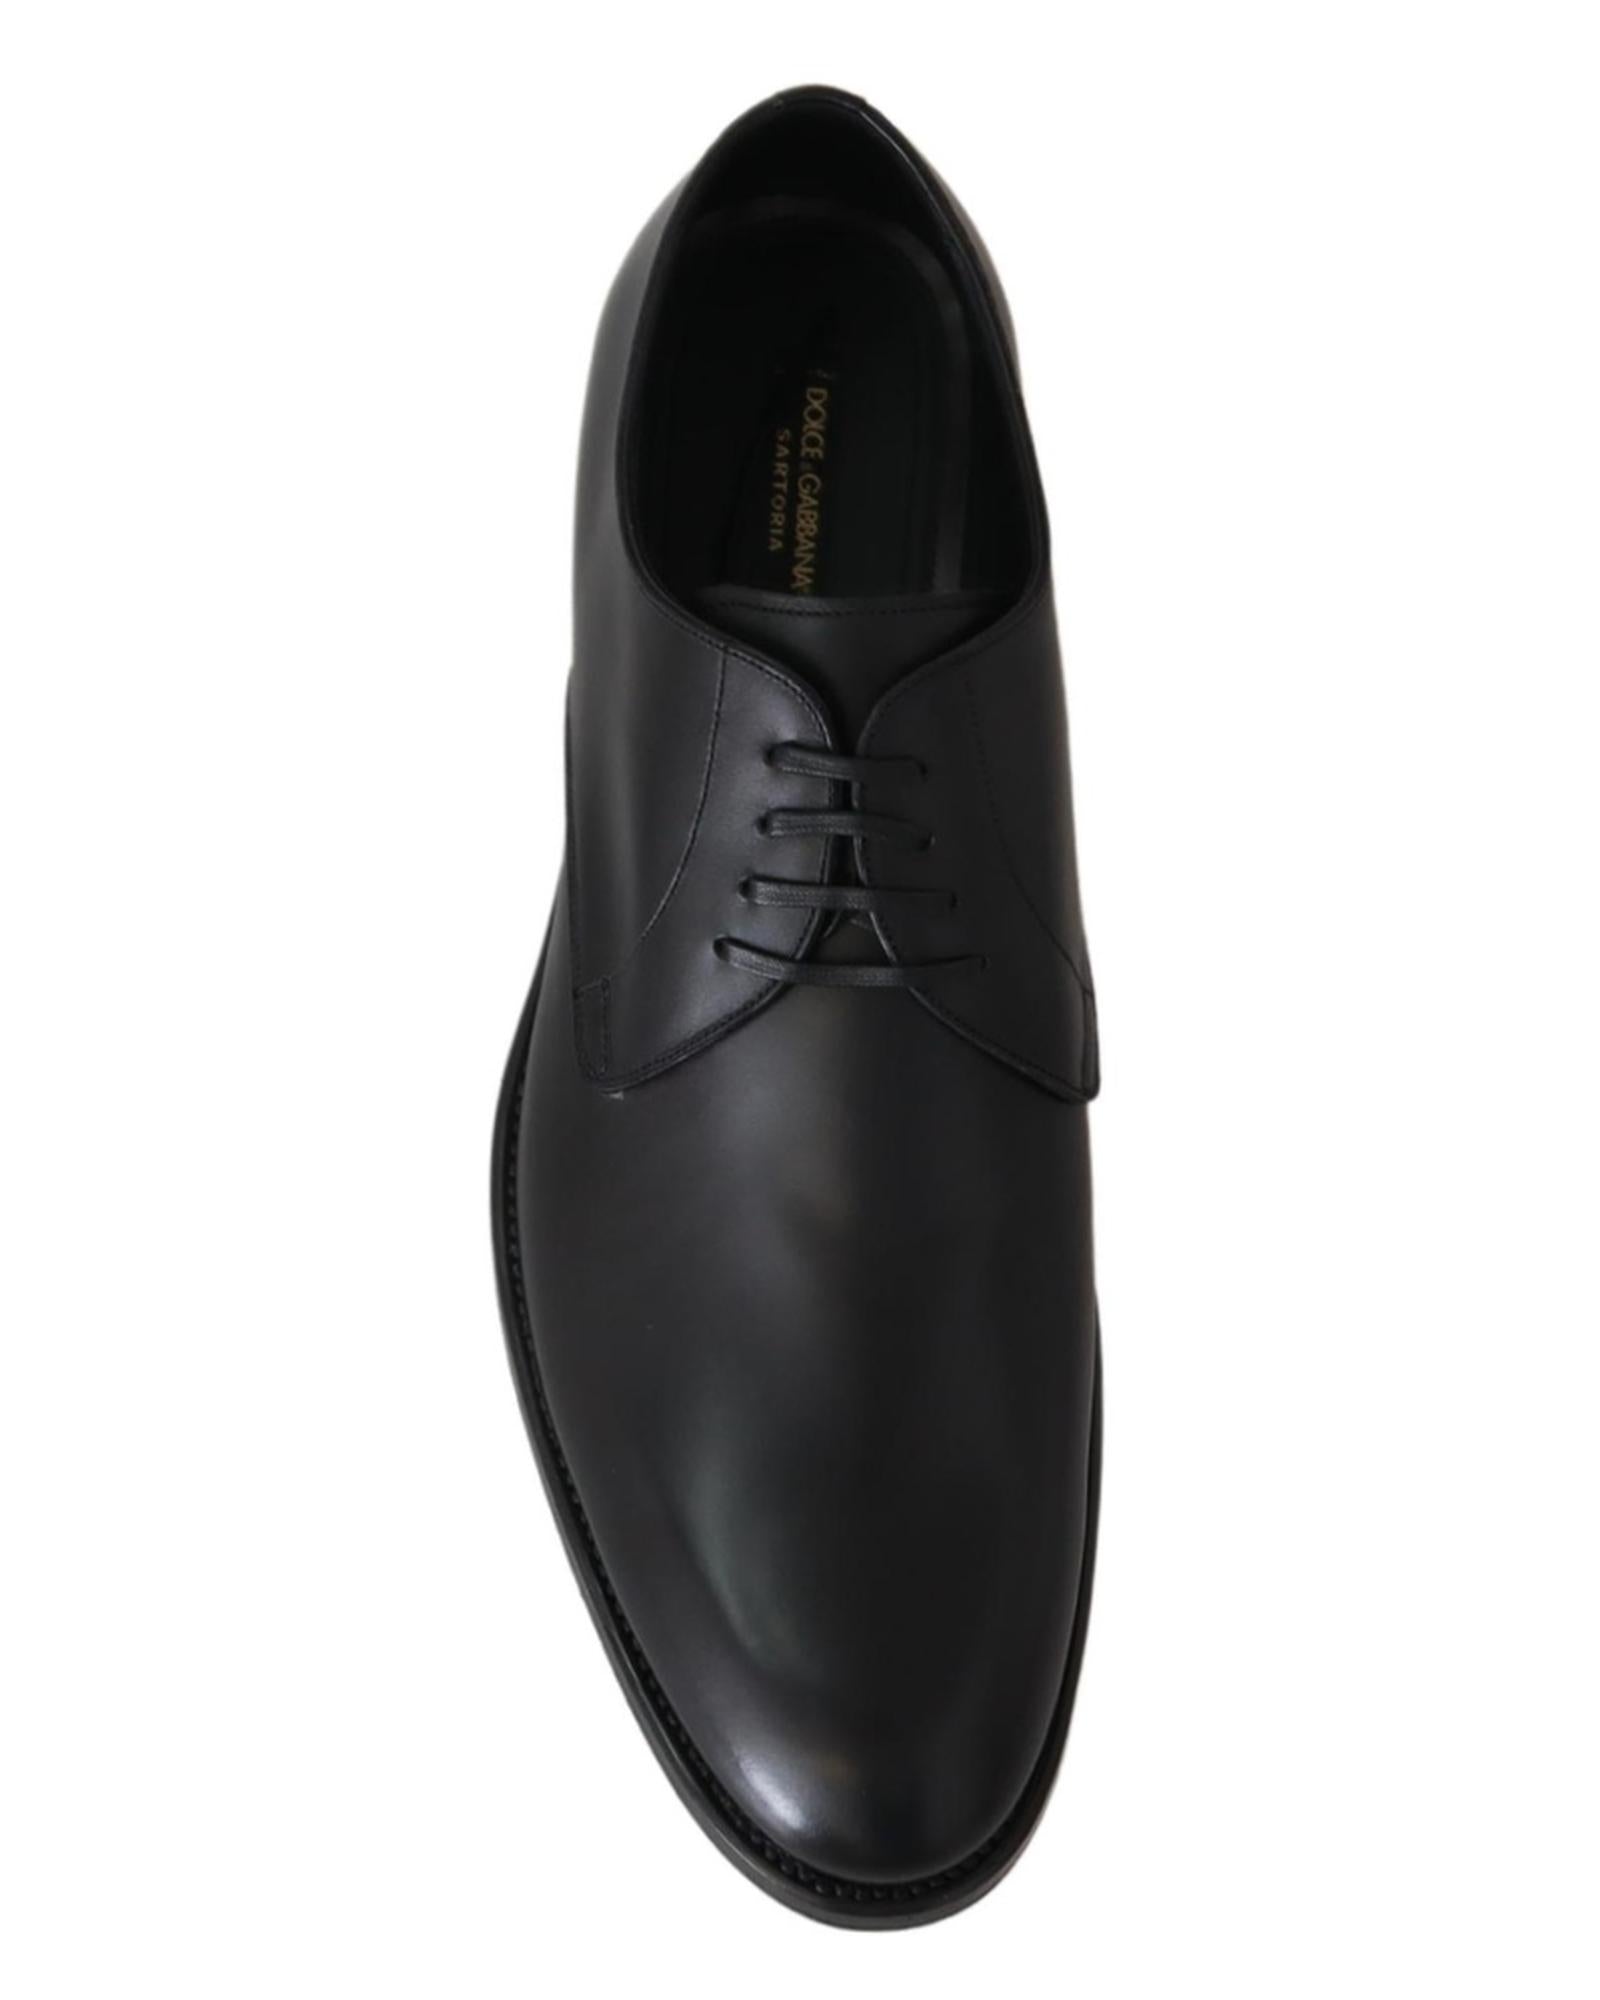 Handcrafted Black Leather Derby Dress Formal Shoes 39.5 EU Men